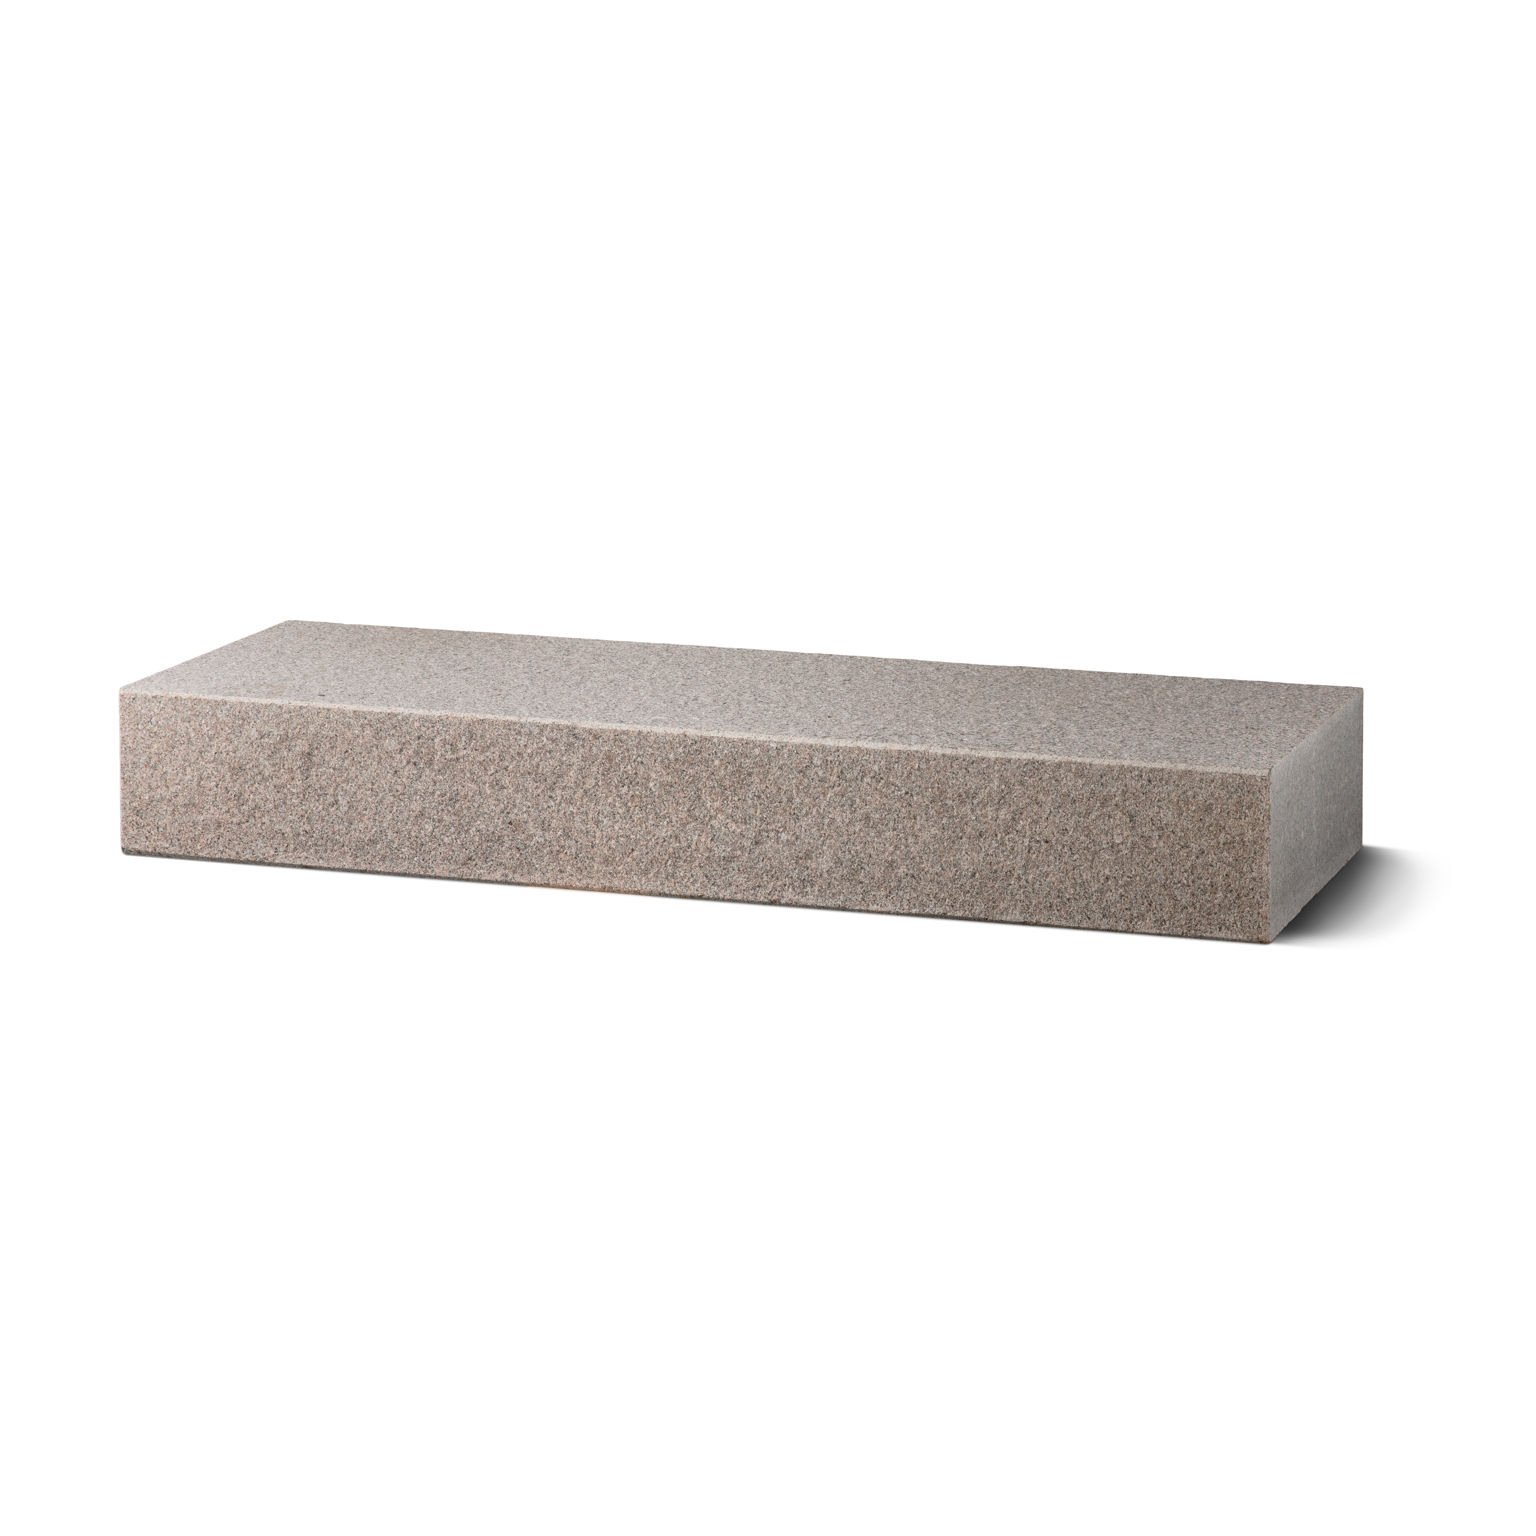 Produktbild på blocksteg i granit med flammad topp och front;i måtten 1500x350x170 mm och i färgen Bohus grå.